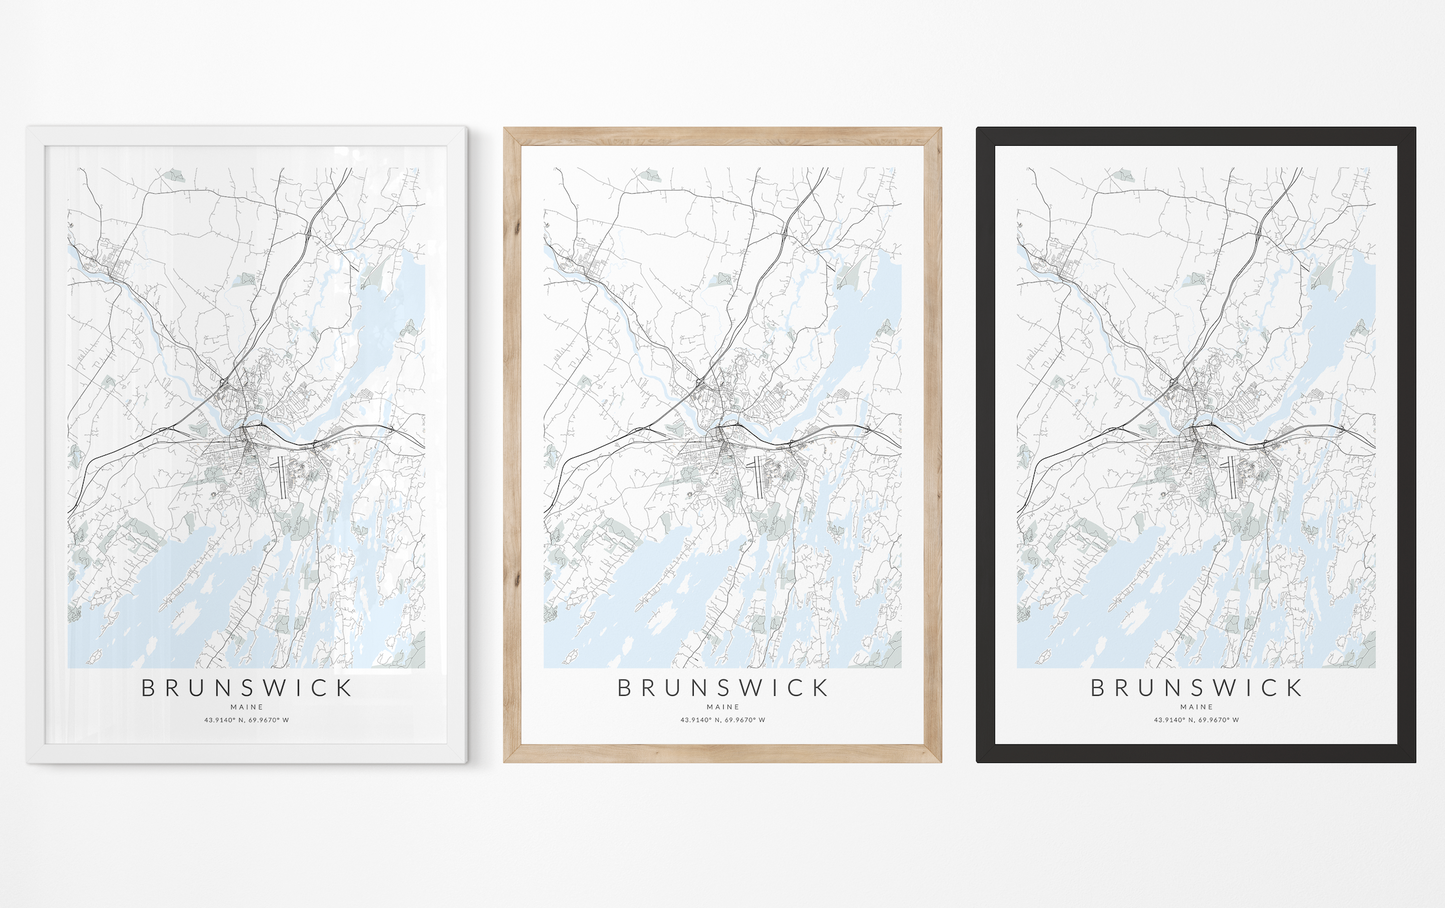 Brunswick Map Print